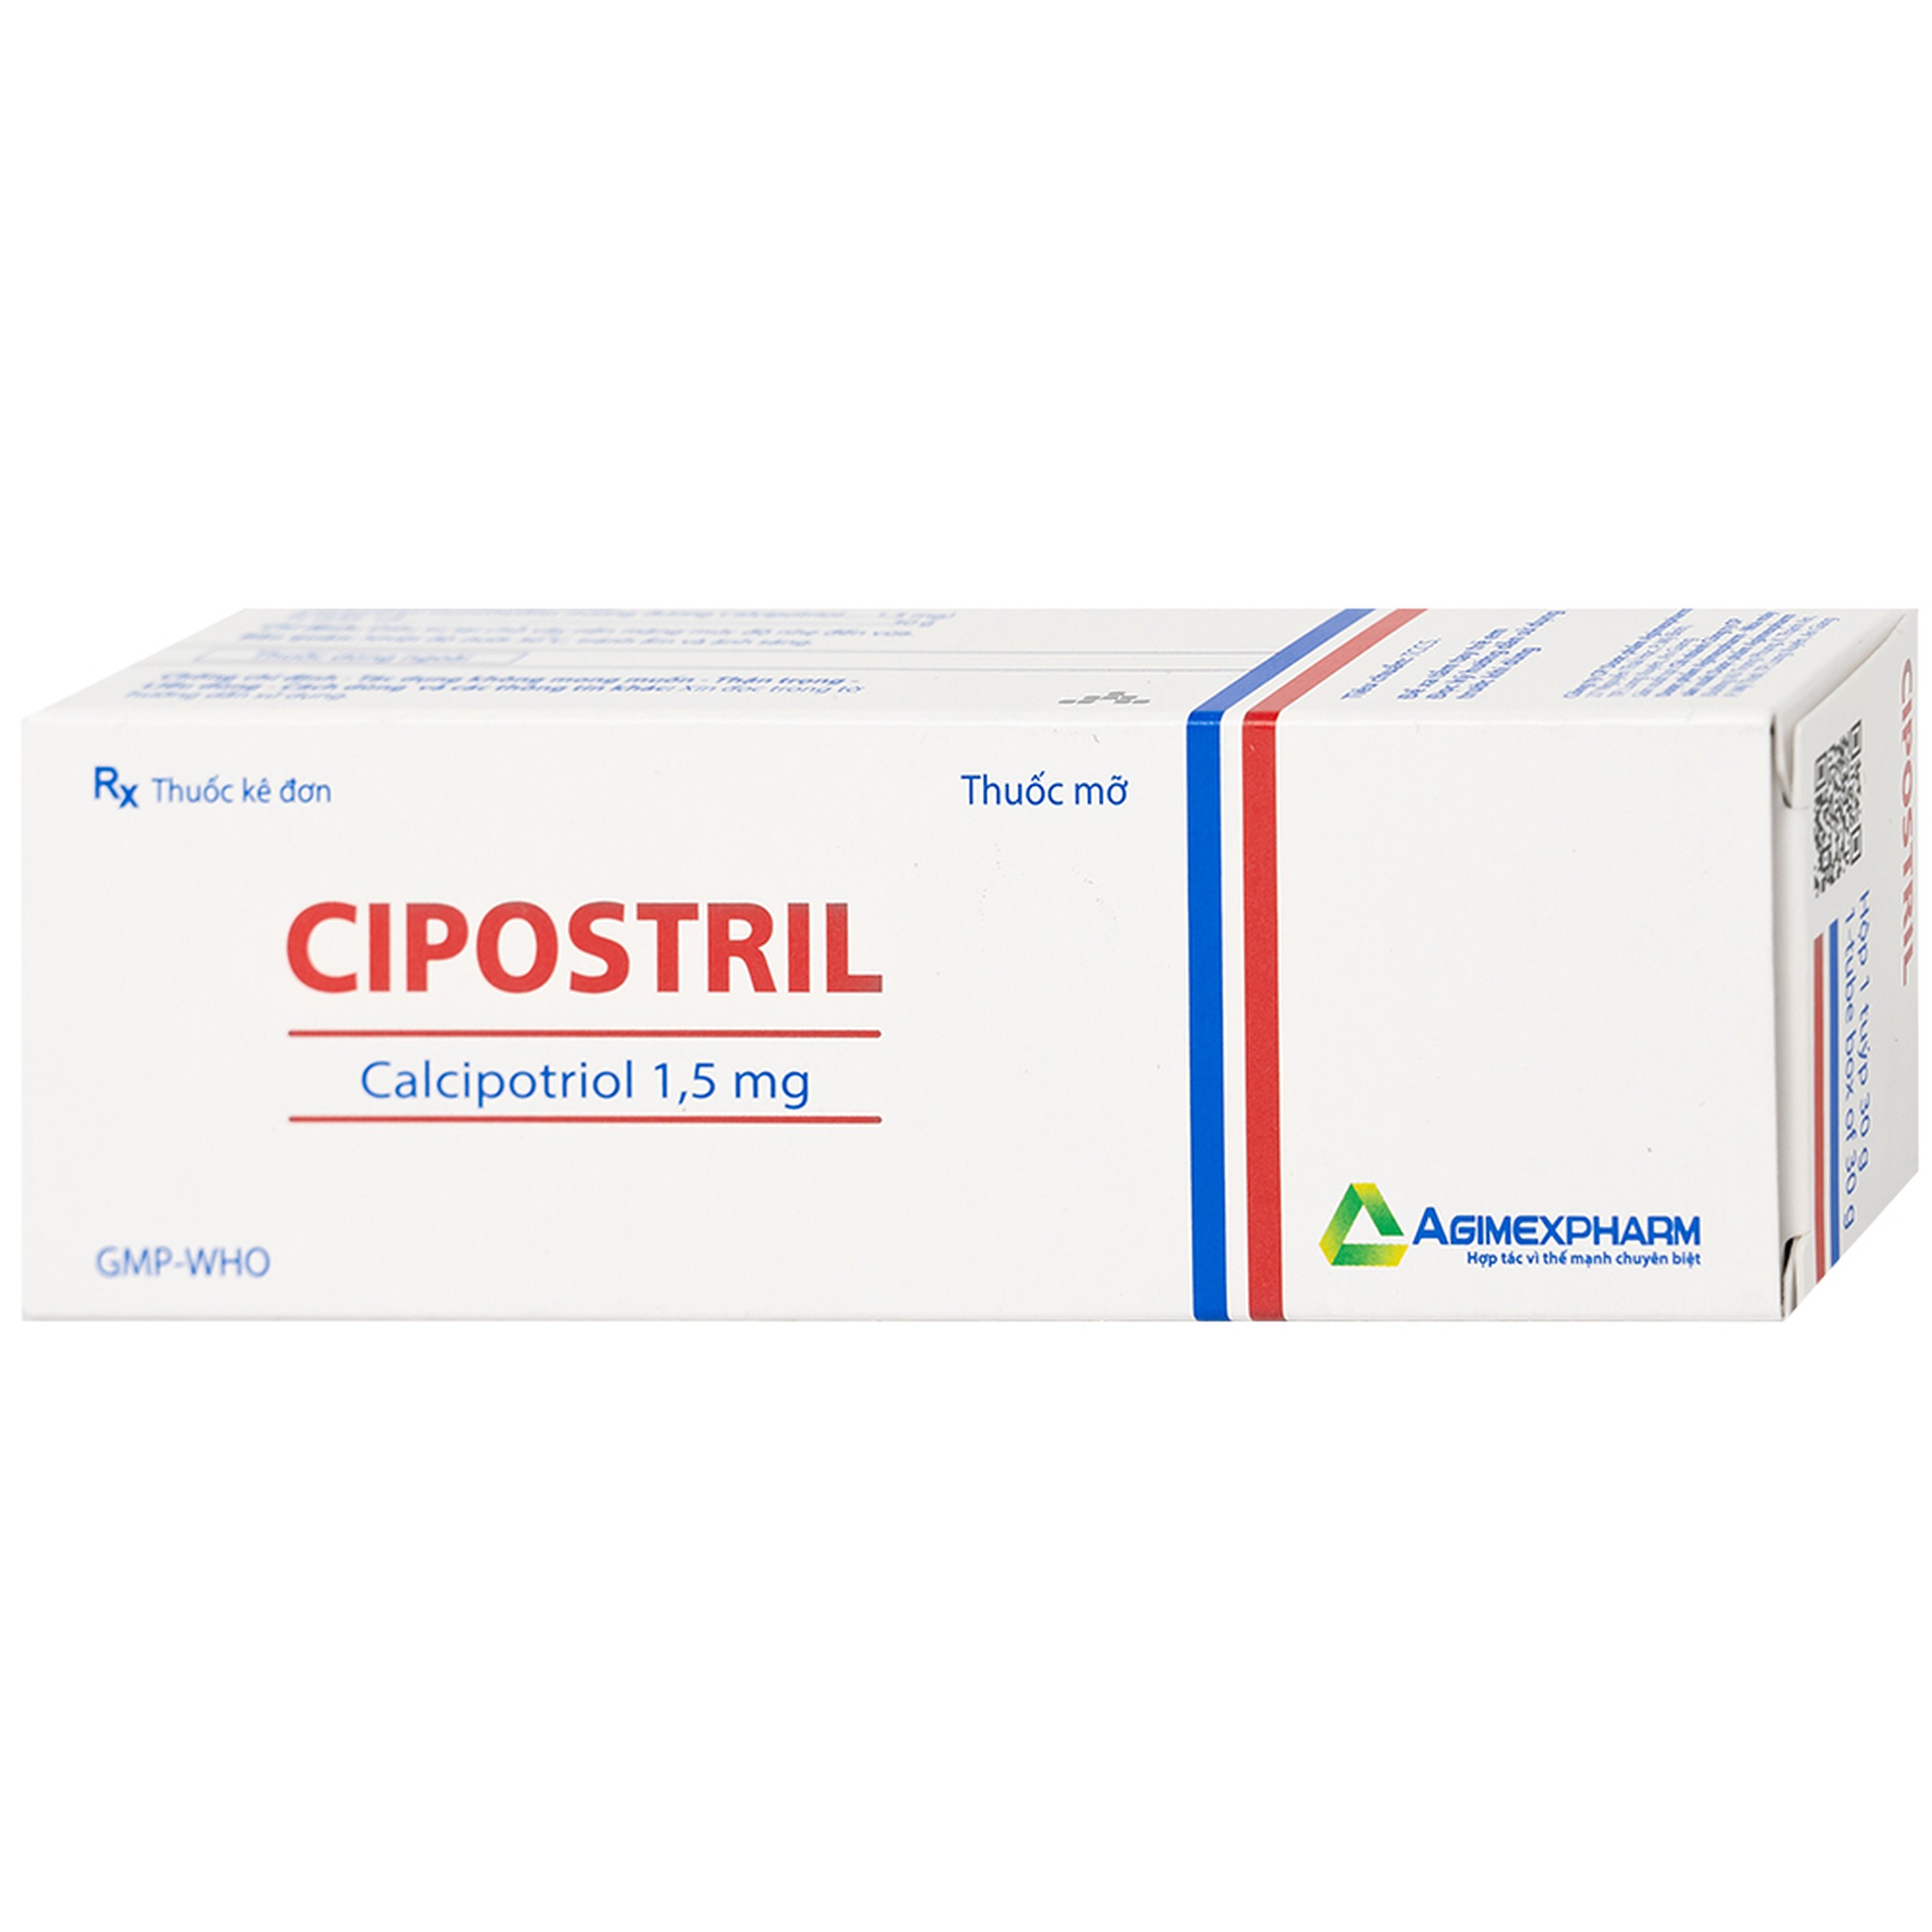 Thuốc mỡ Cipostril 1.5mg Agimexpharm điều trị tại chỗ vảy nến mảng mức độ nhẹ đến vừa (30g)